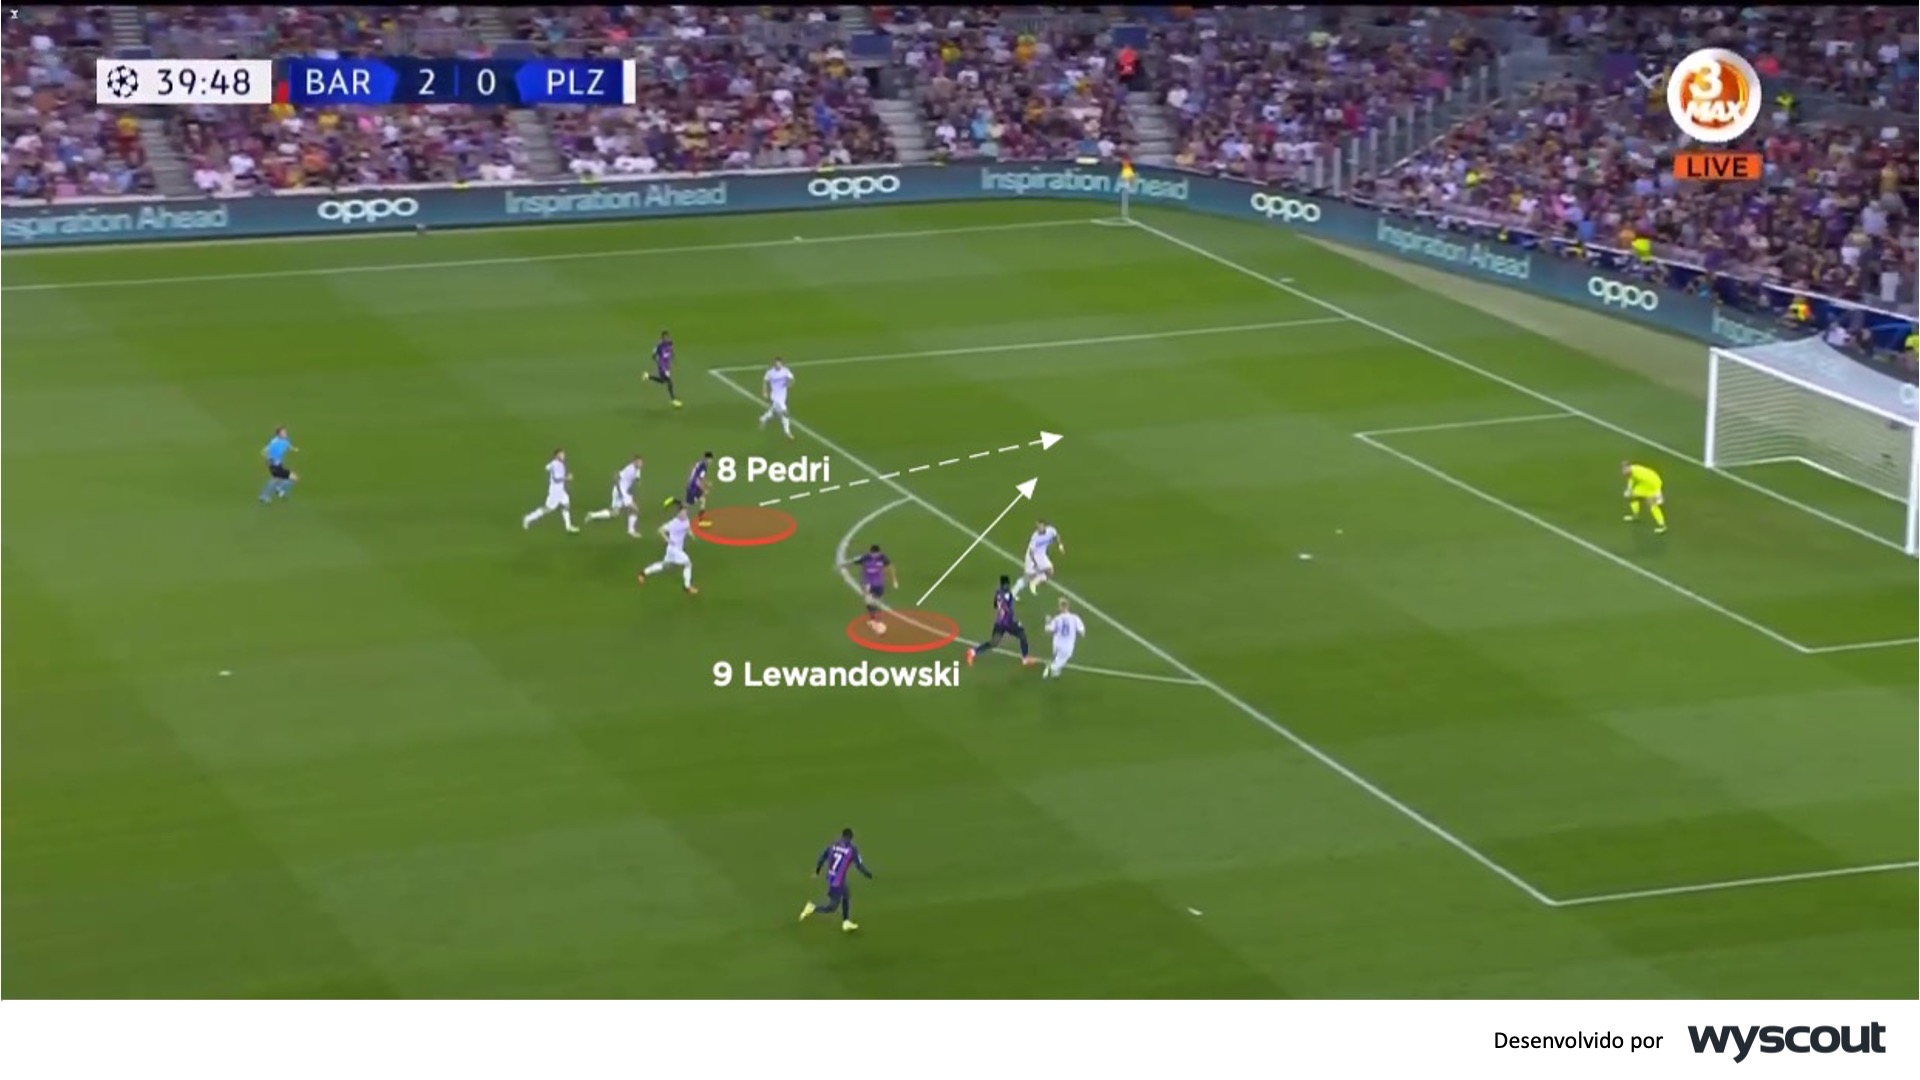 A presença de Lewandowski no Barcelona faz dele a principal referência em qualquer aproximação à área rival. Xavi precisava de um atacante completo